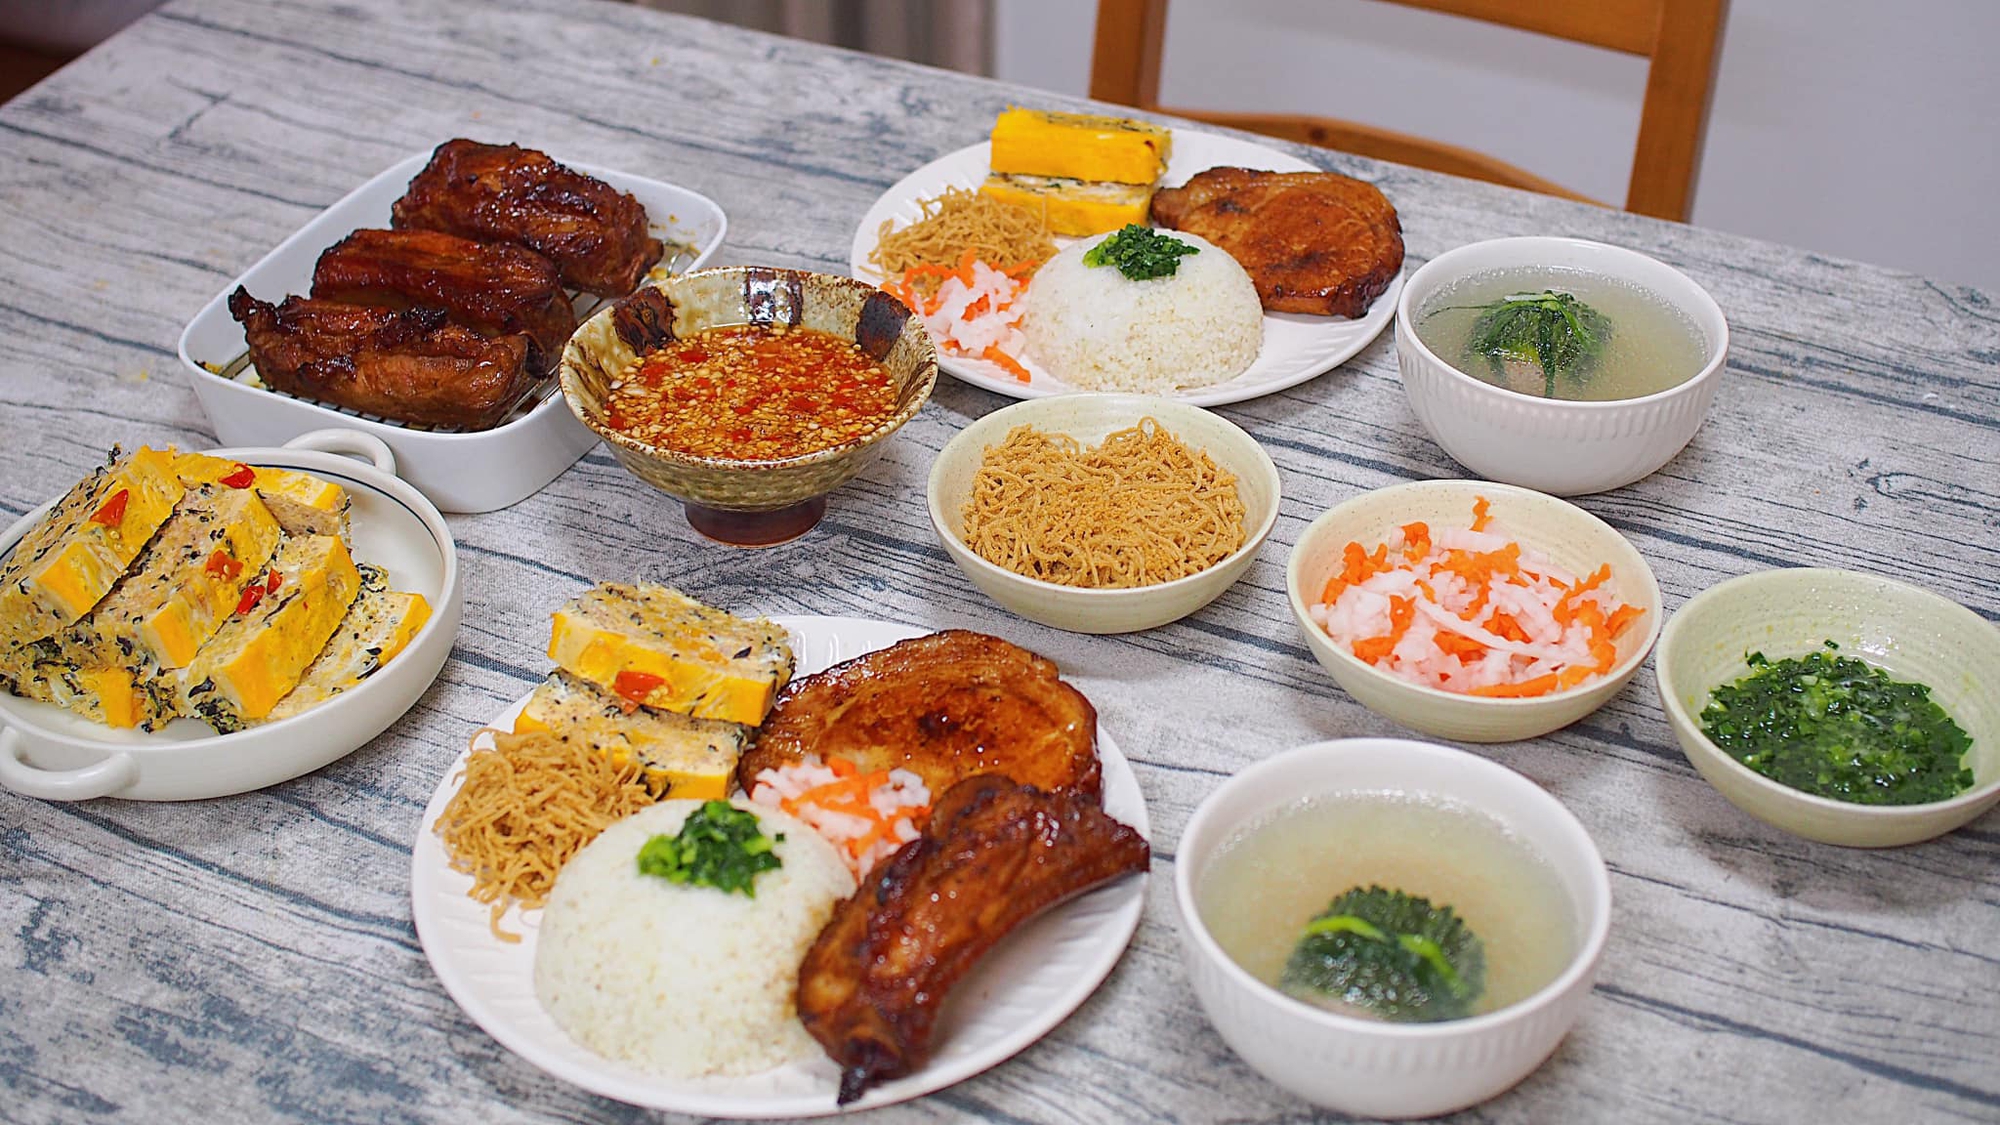 Cơm tấm Sài Gòn: Biểu tượng giao thoa văn hóa ẩm thực giữa phương Đông và phương Tây - ảnh 8